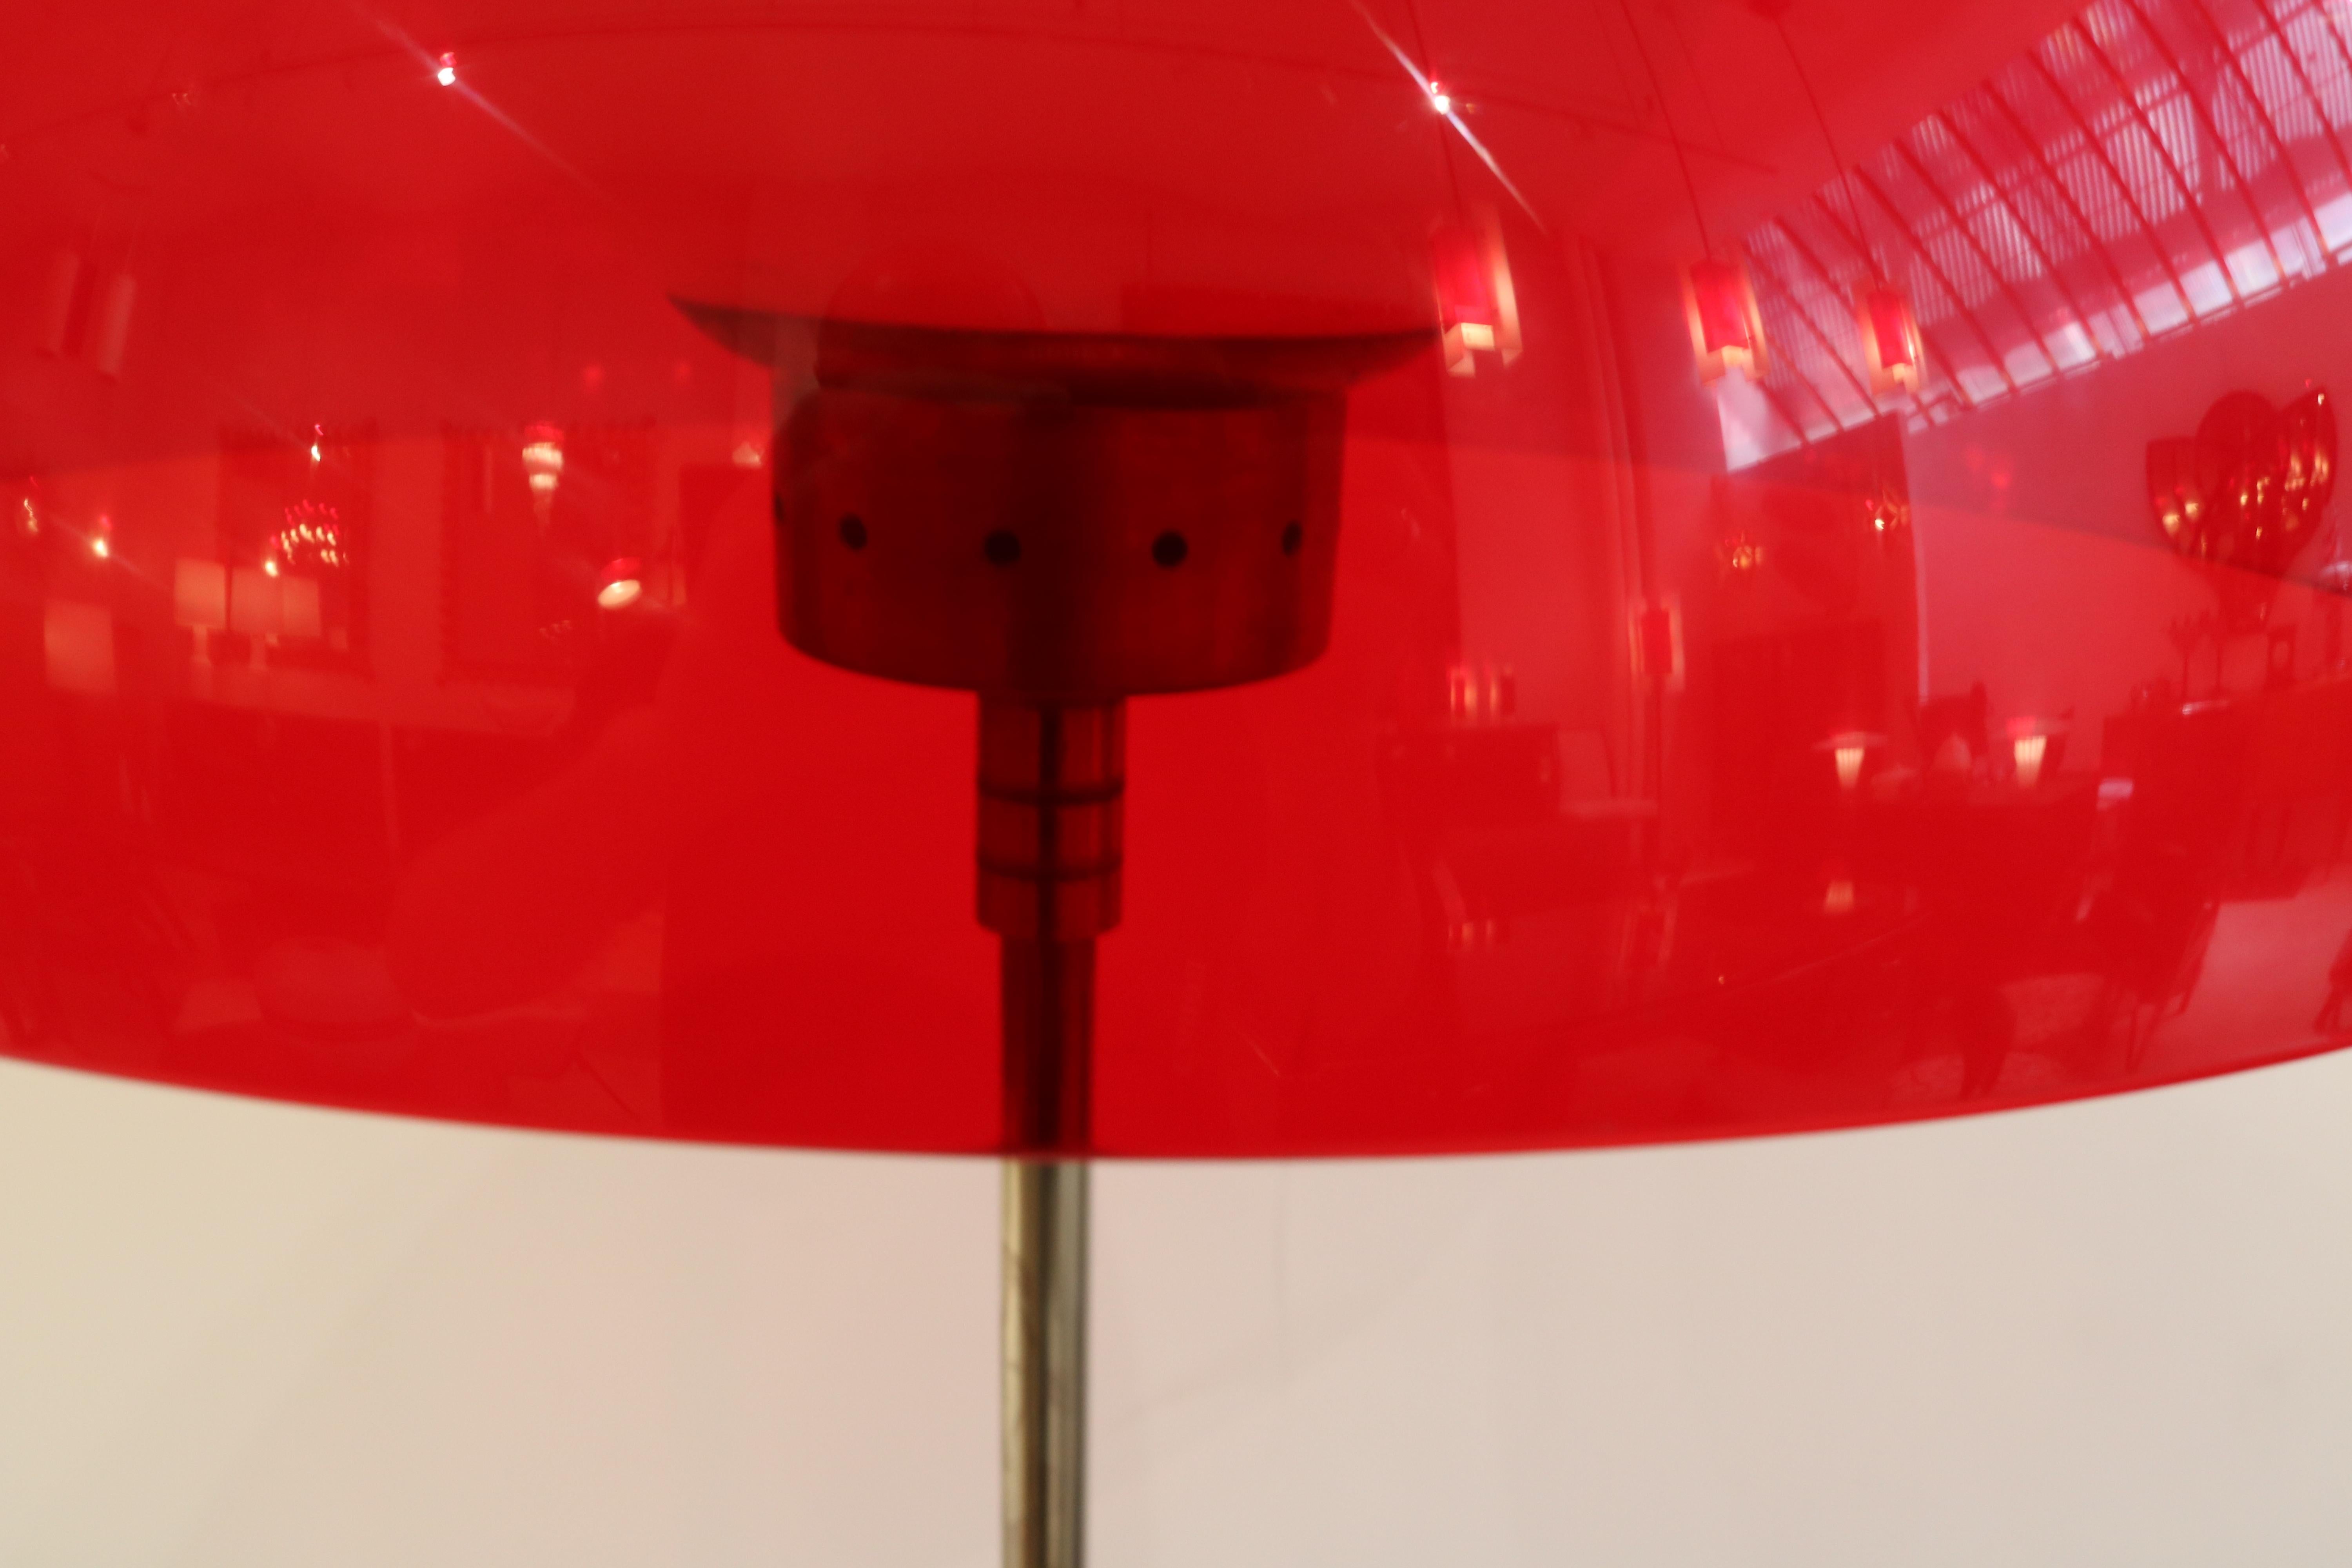 Stehleuchte im italienischen Modernismus.
Roter Kunststoffschirm, kombiniert mit dekorativen Metallelementen und einer Innenkugel aus Milchglas.
Gestützt auf einen Schaft aus patiniertem Metall, der auf einem Marmorsockel ruht.